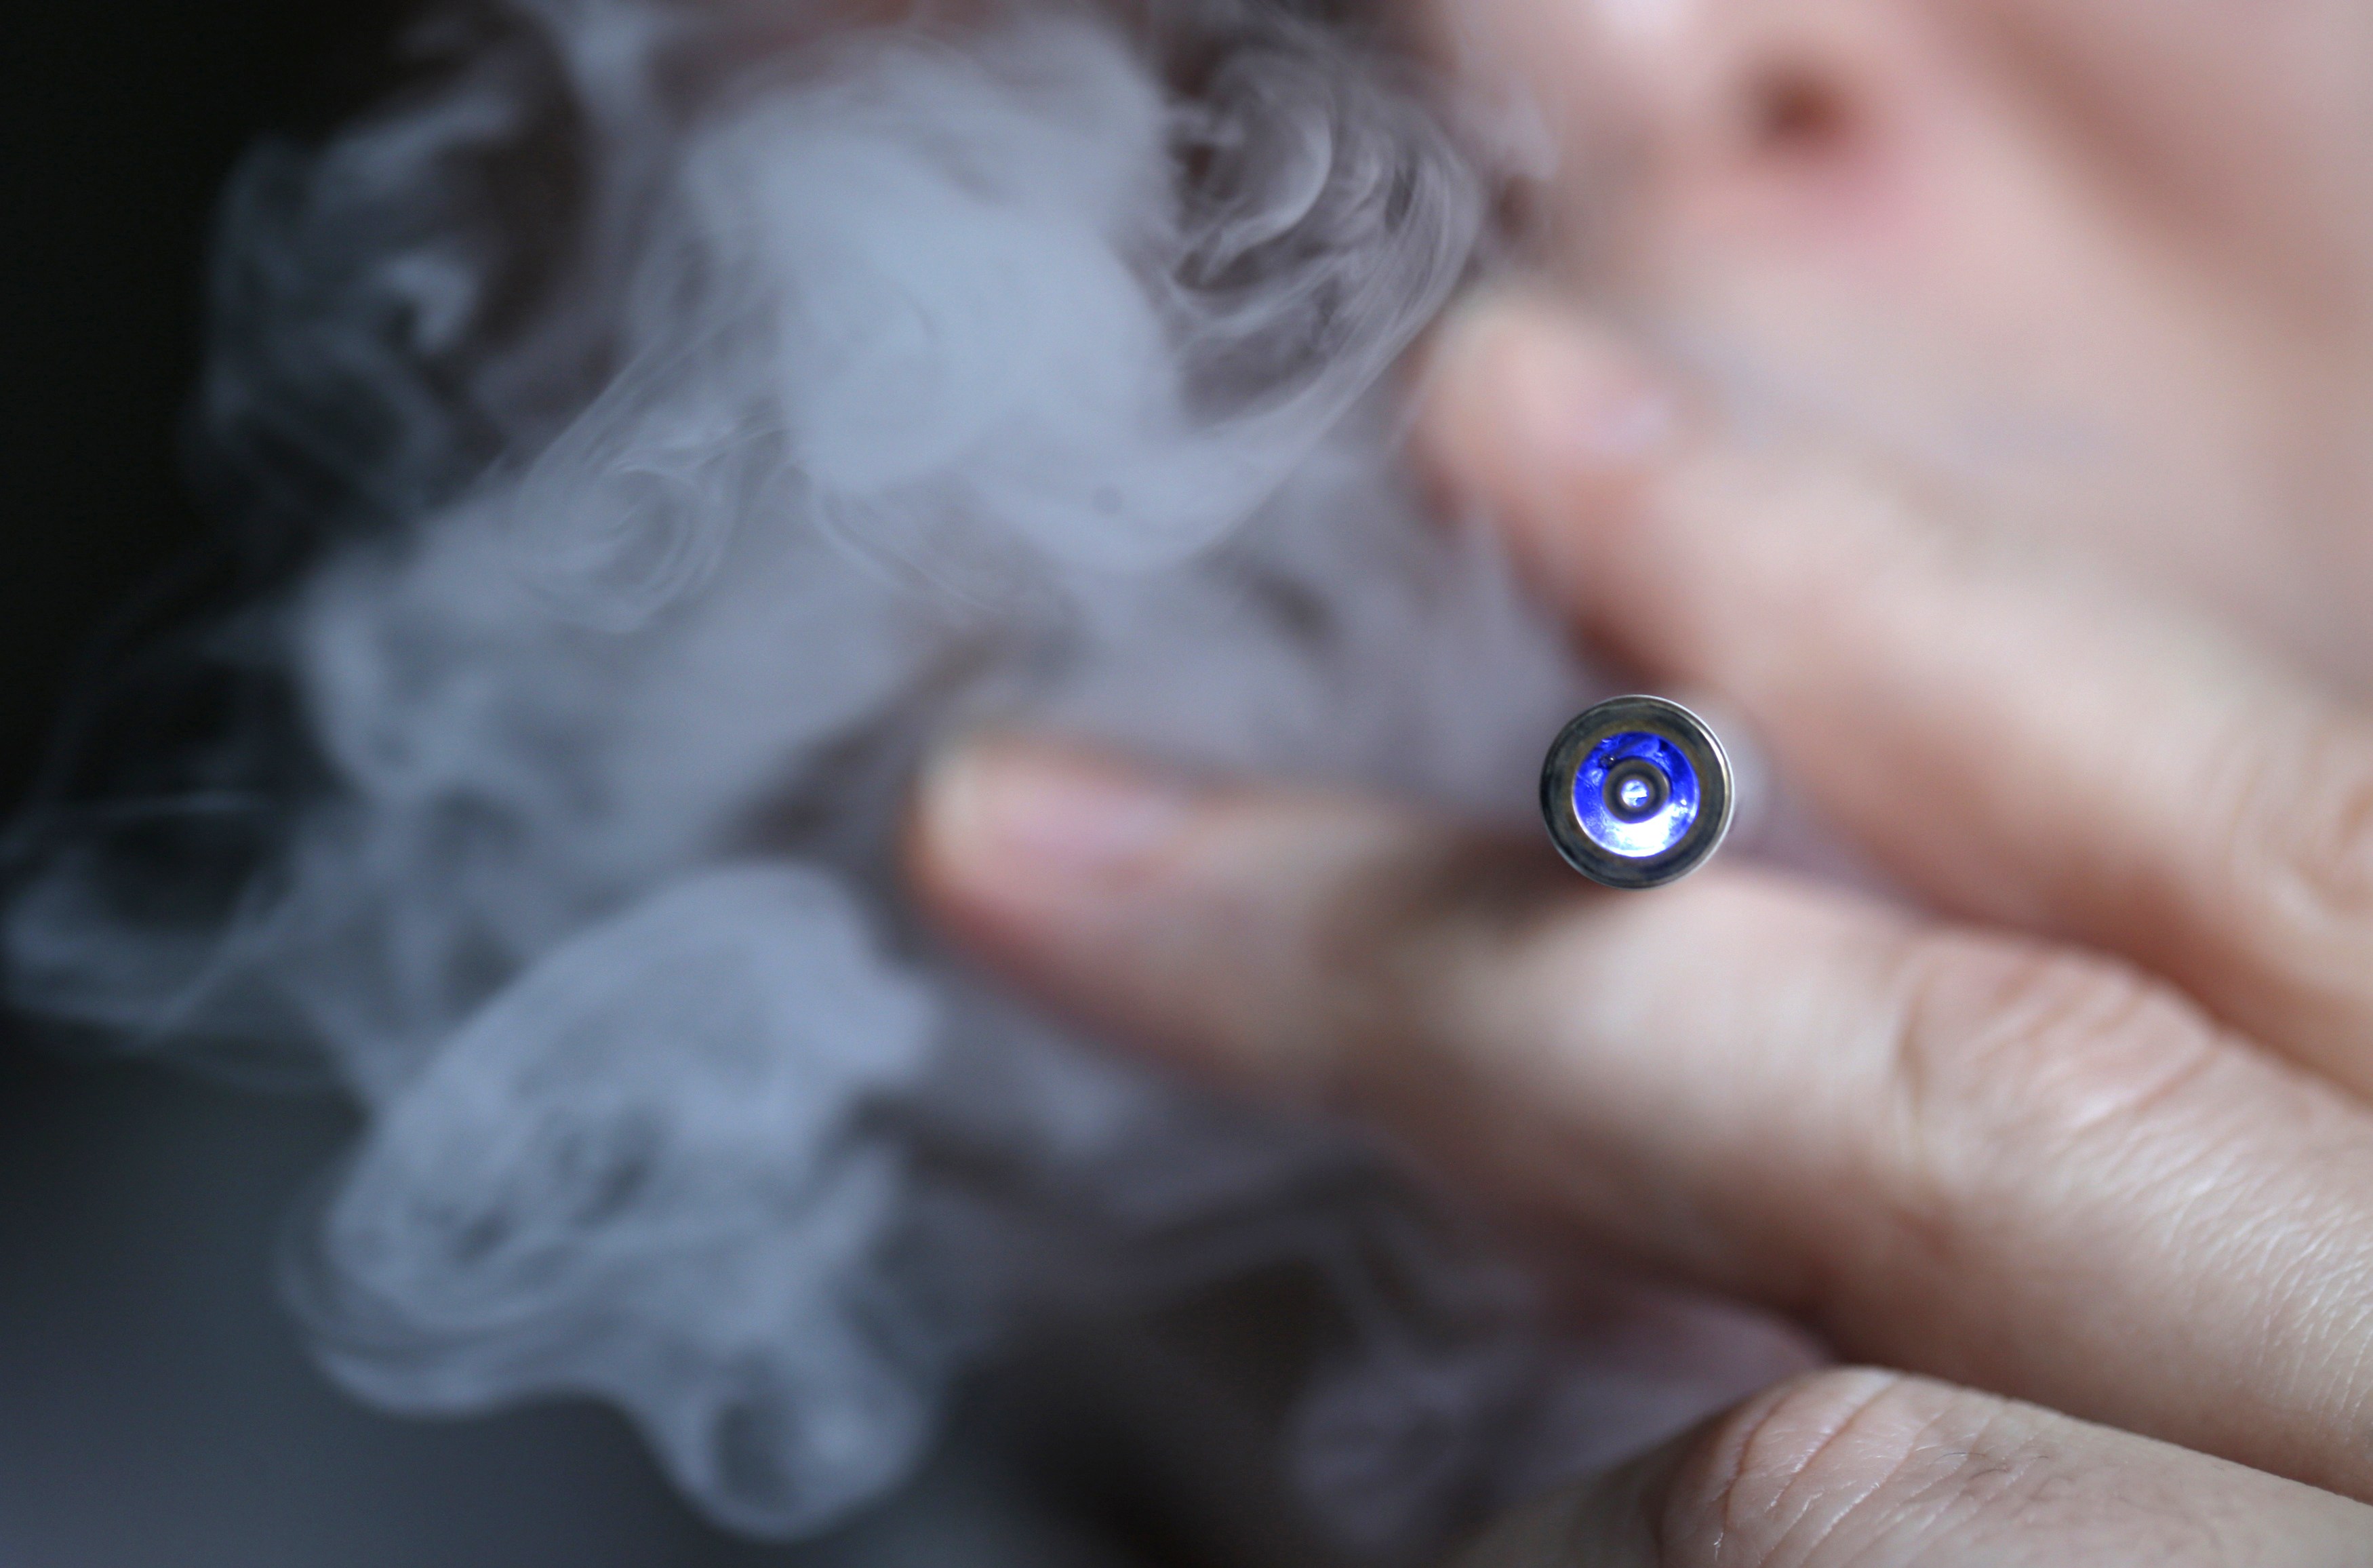 Ηλεκτρονικά τσιγάρα και προϊόντα καπνού αυξάνουν τον κίνδυνο καρκίνου στόματος